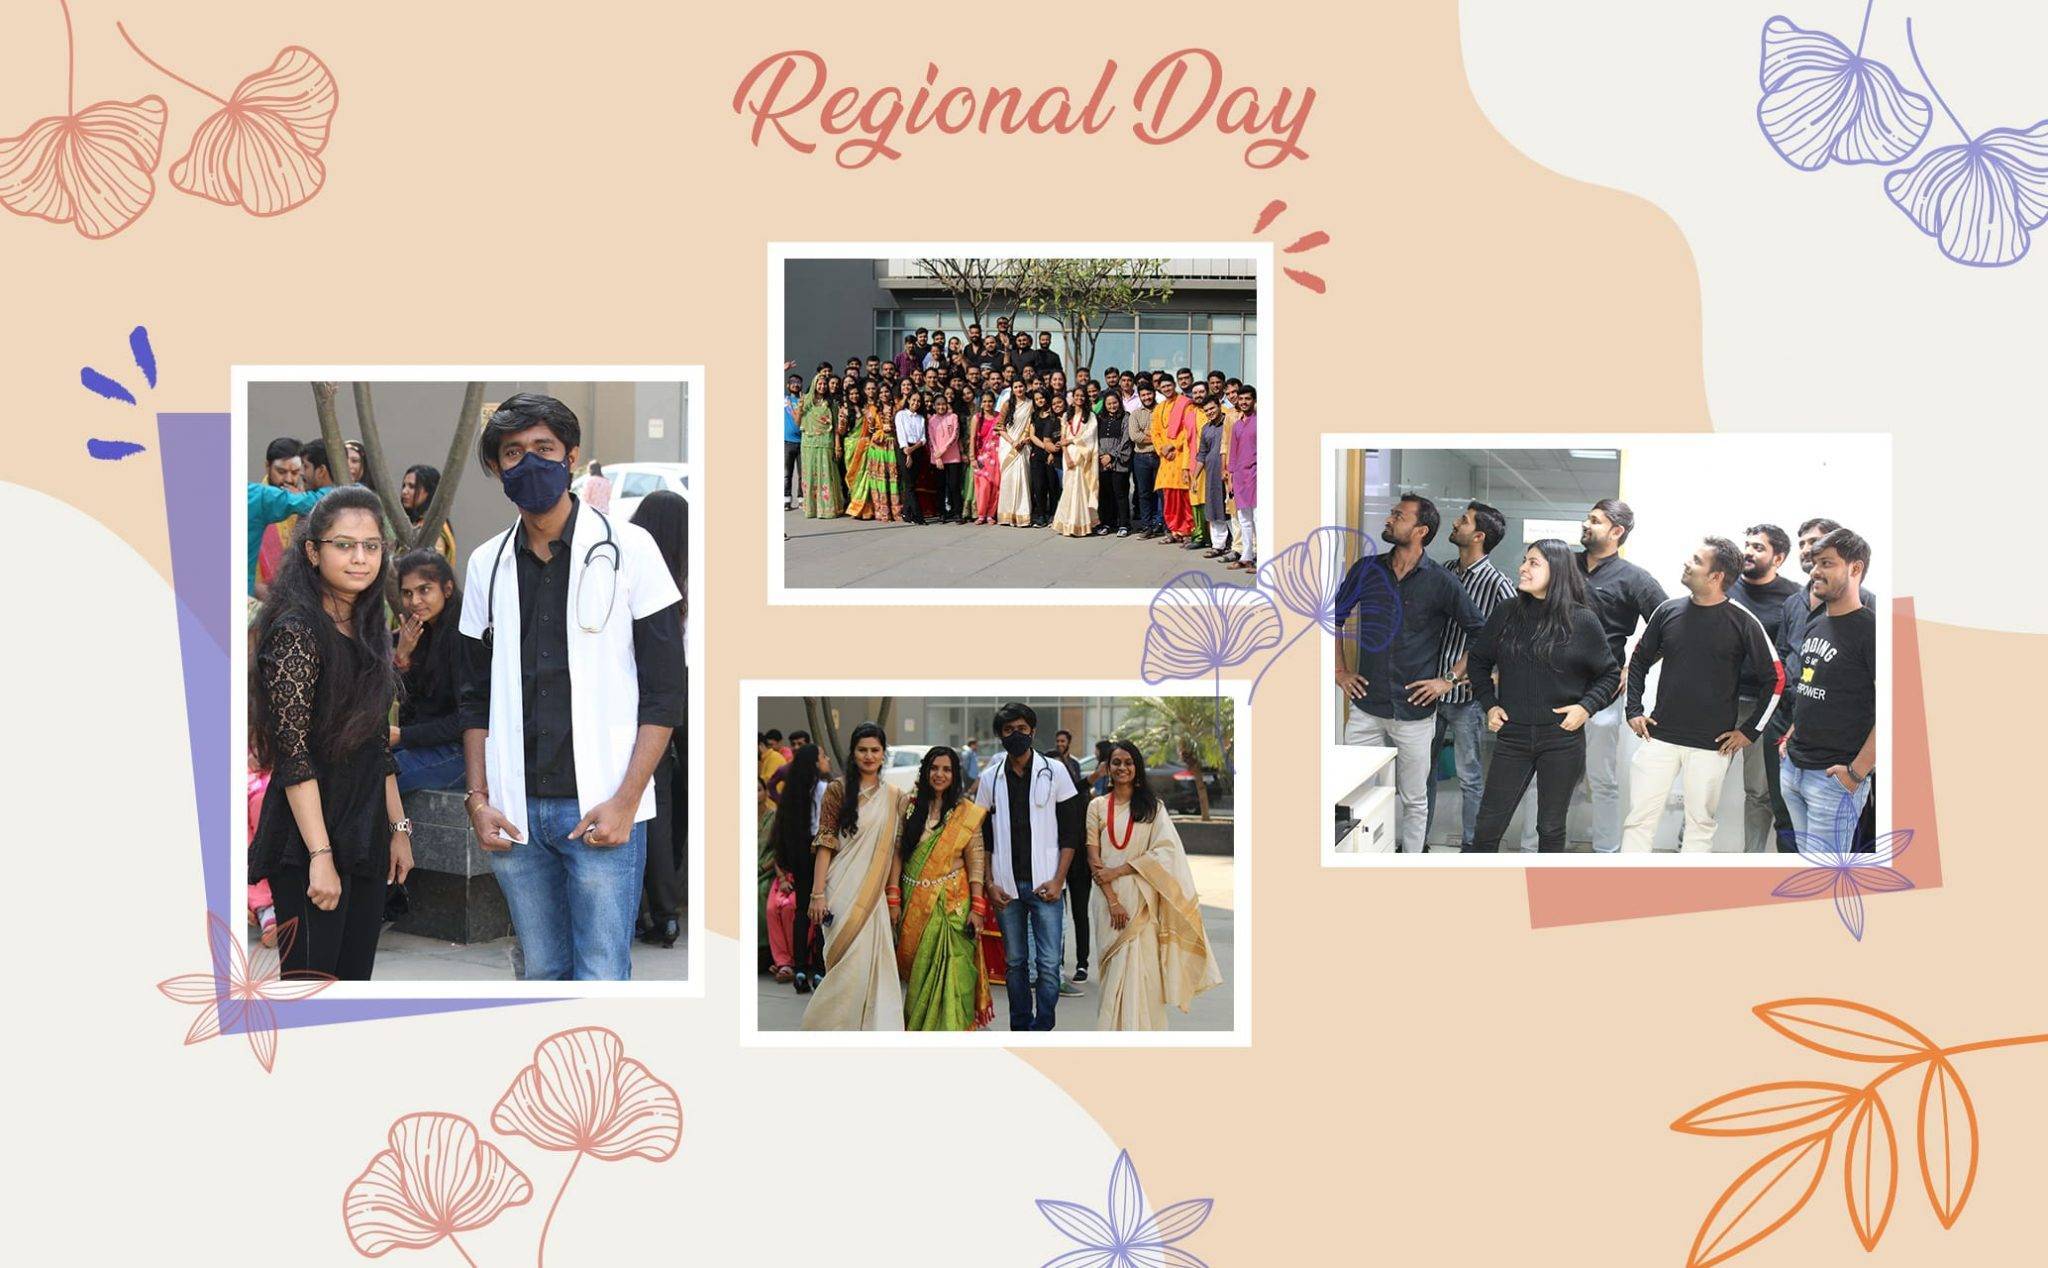 Regional Day's